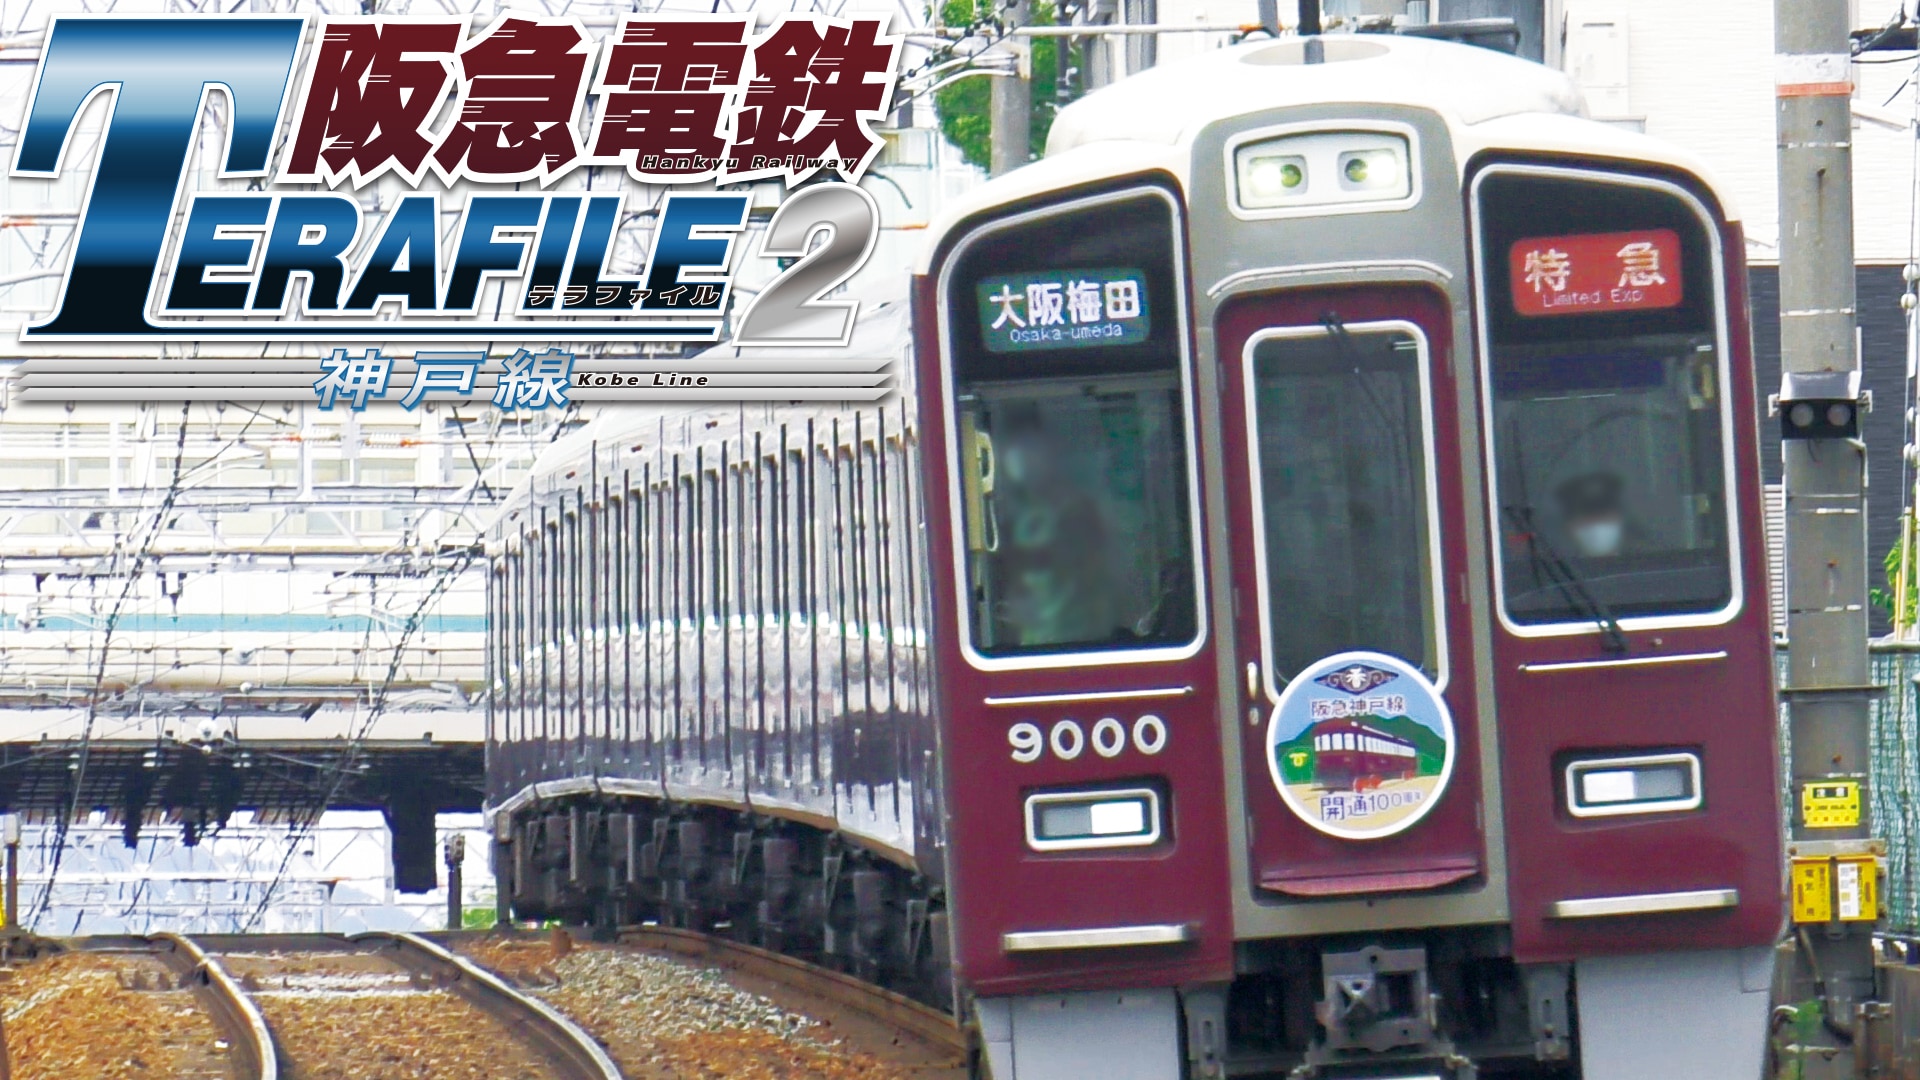 阪急電鉄テラファイル2 神戸線｜カンテレドーガ【初回30日間無料トライアル！】